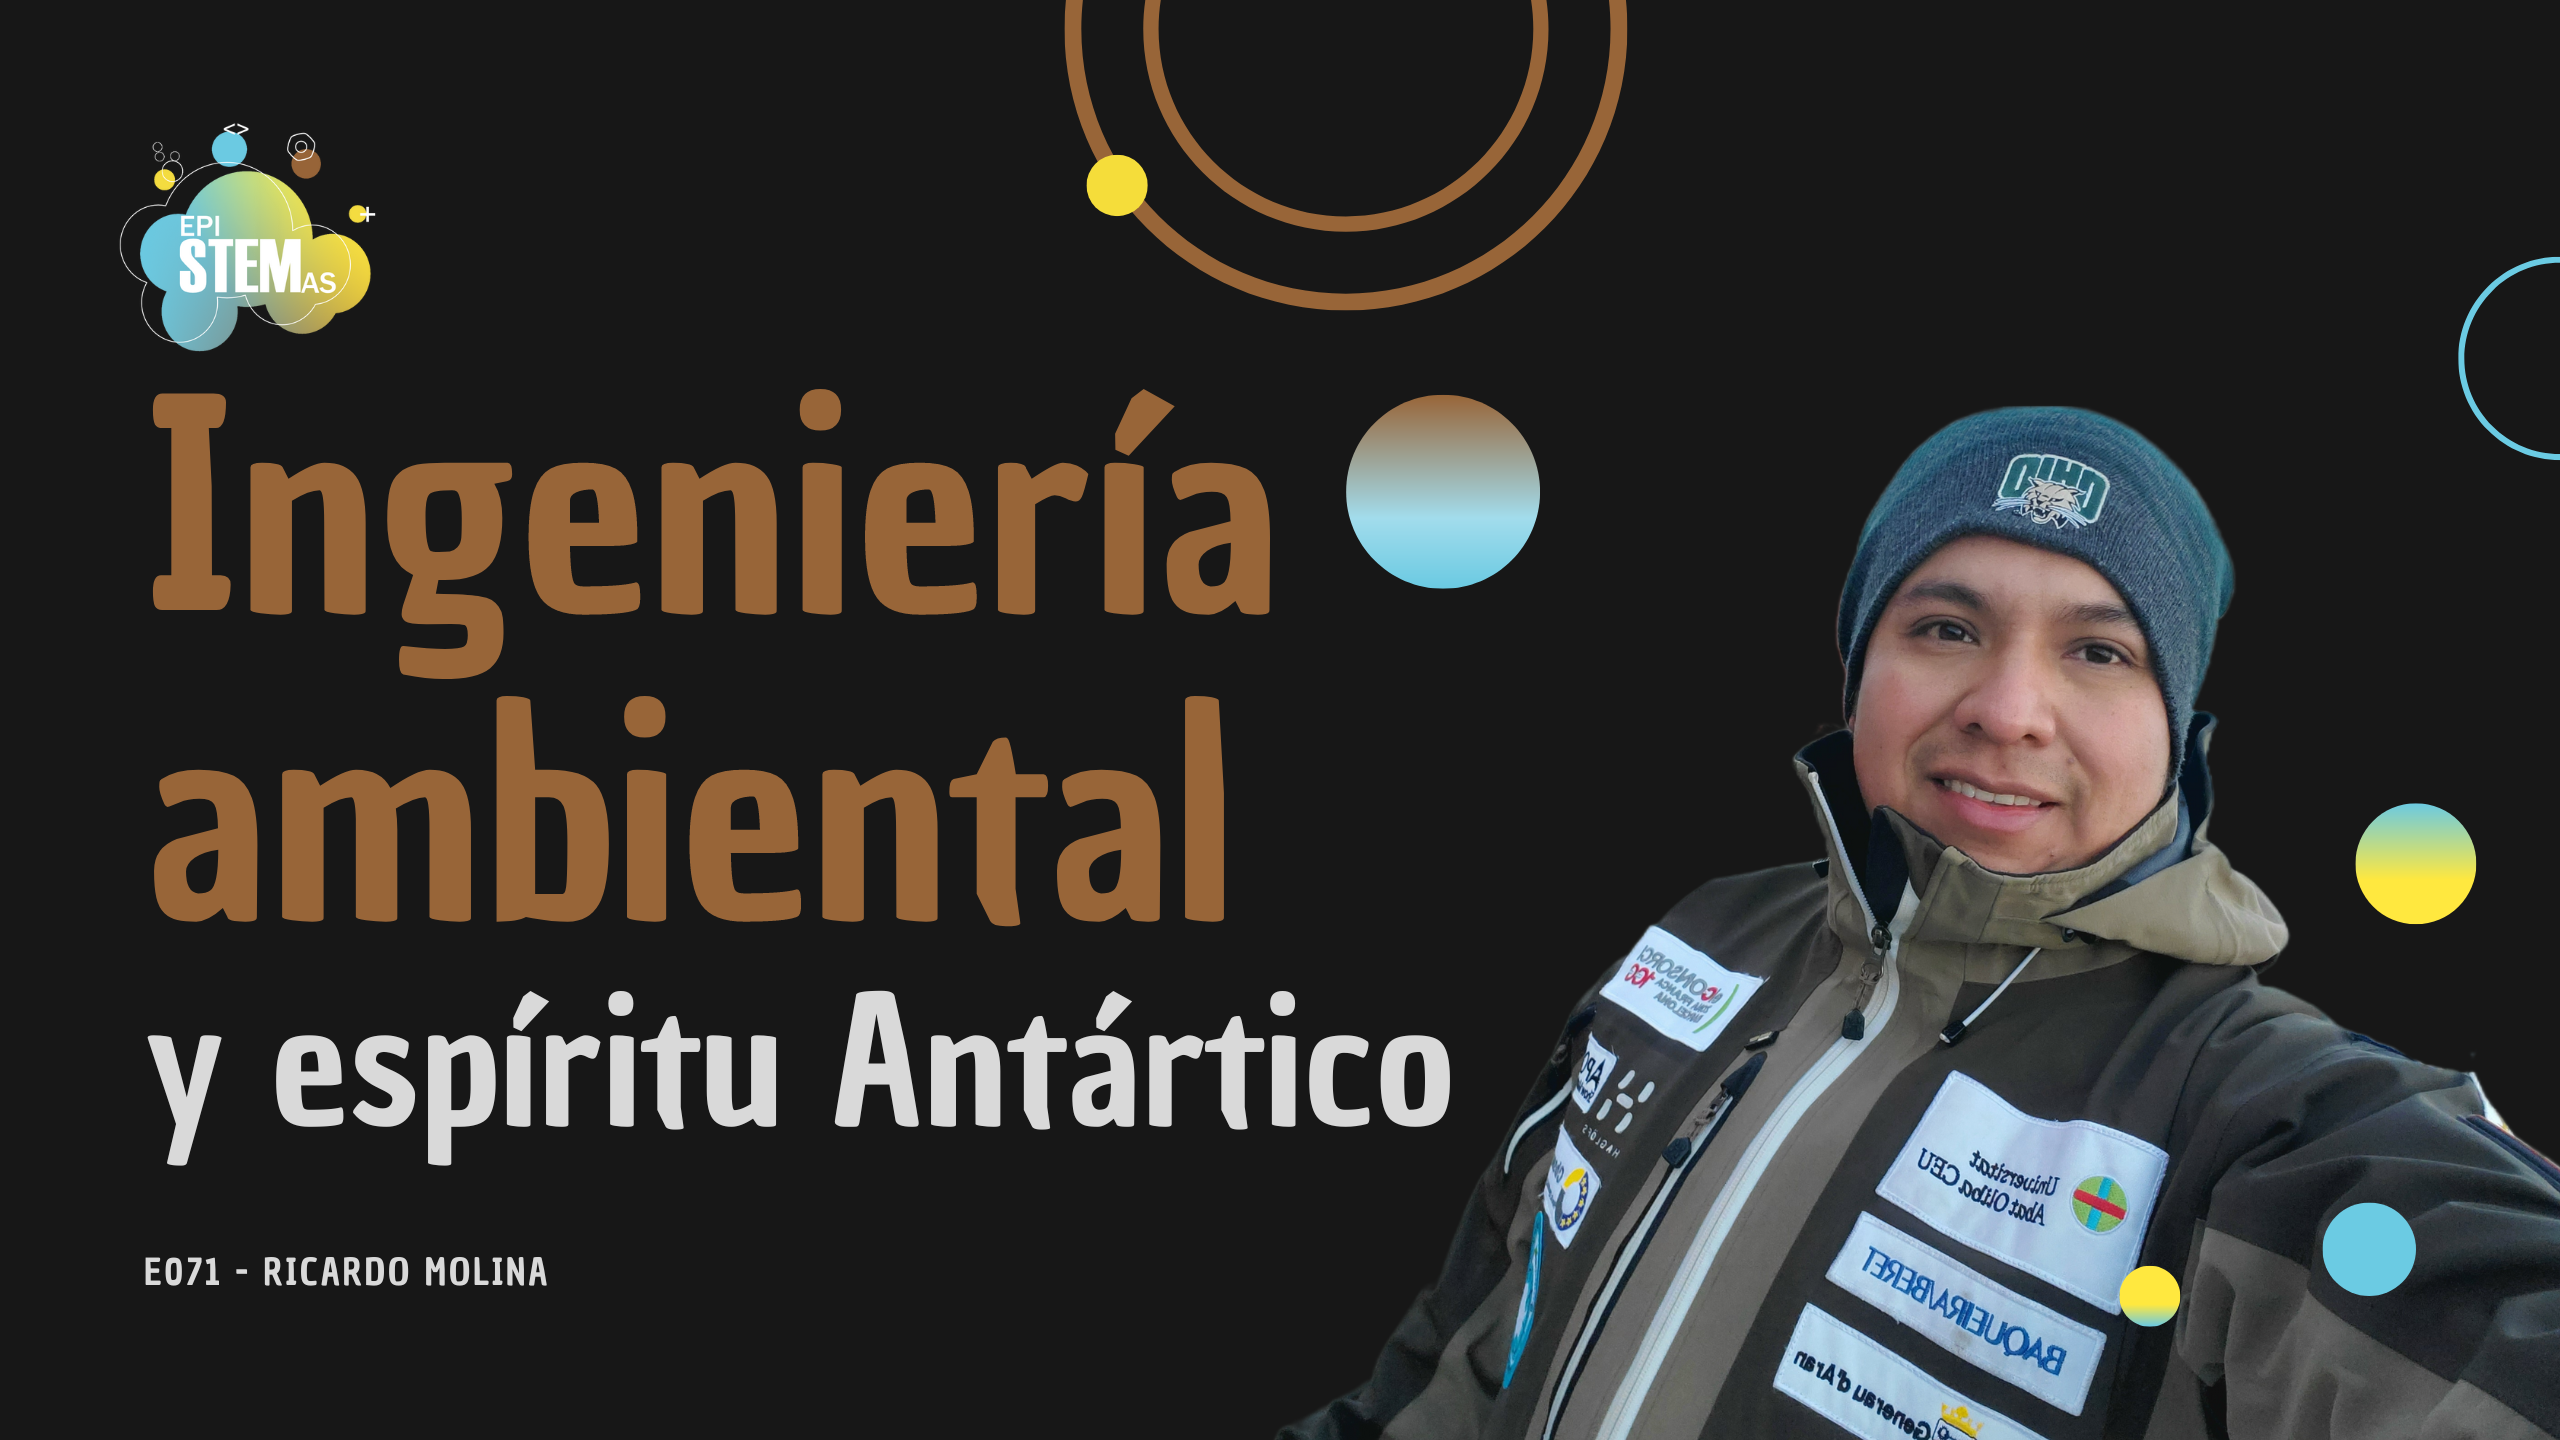 Ingeniería ambiental y espíritu Antártico